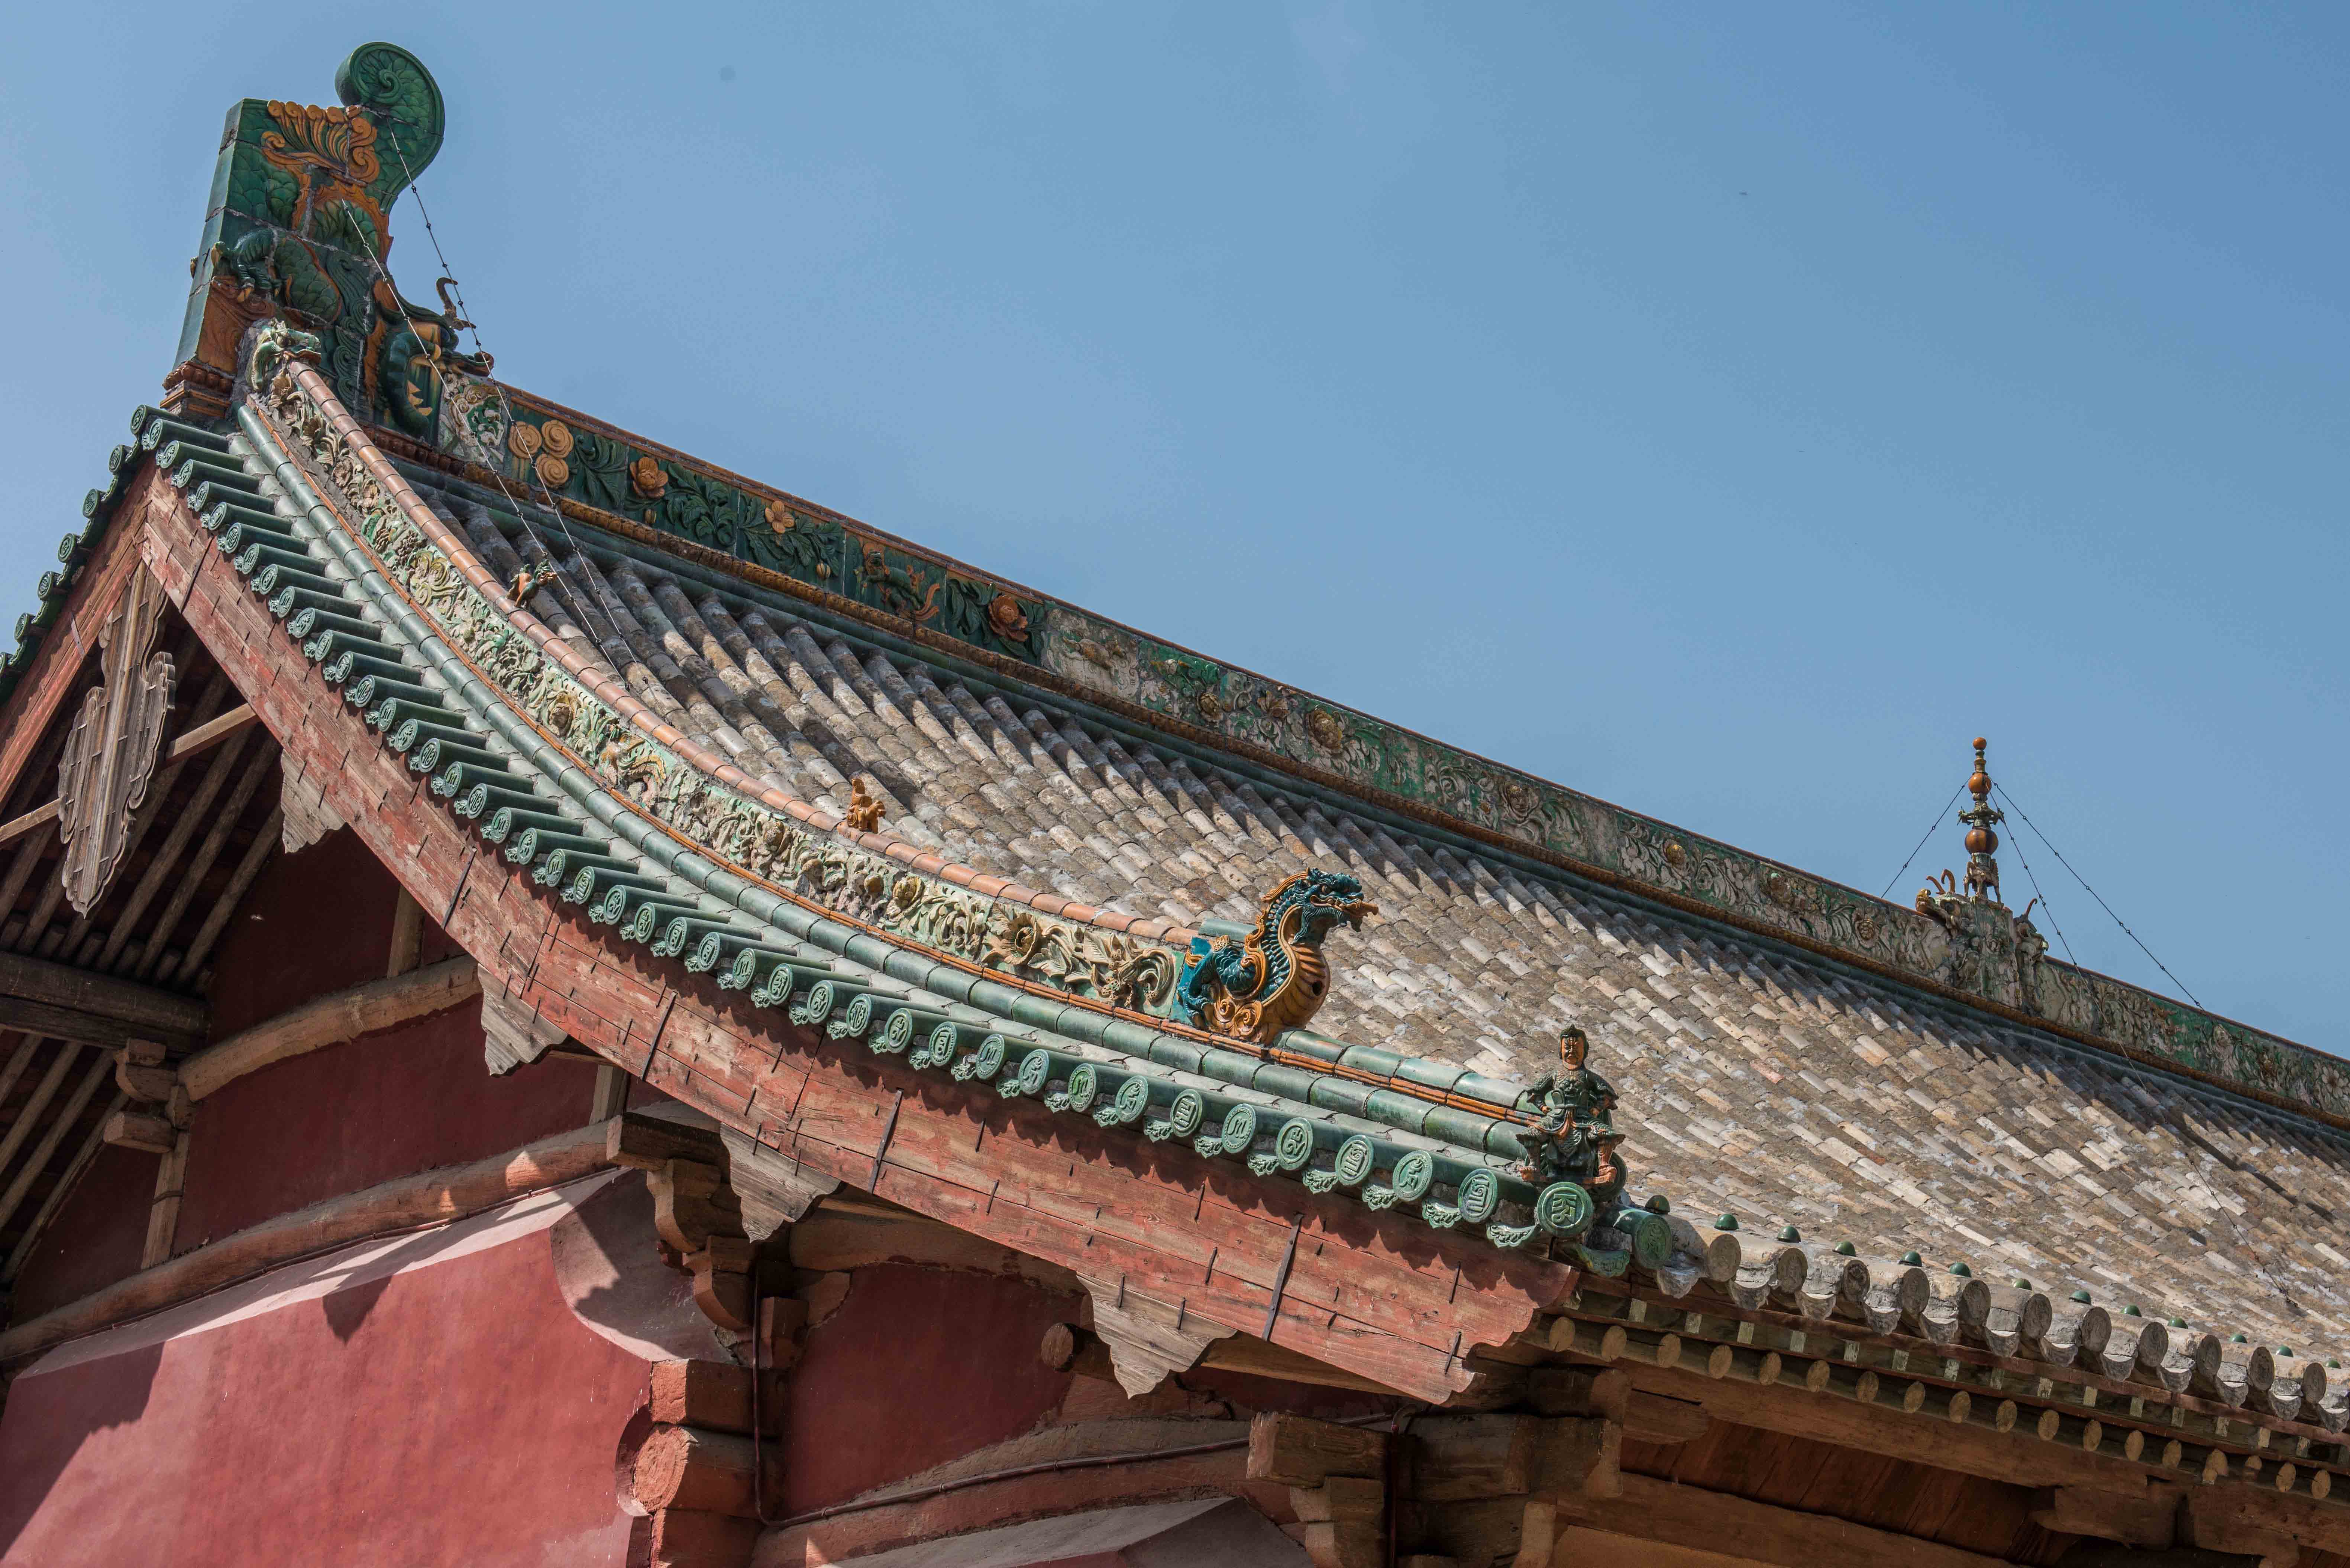 硬山屋顶和悬山屋顶都是两坡顶(中国传统古建筑屋)